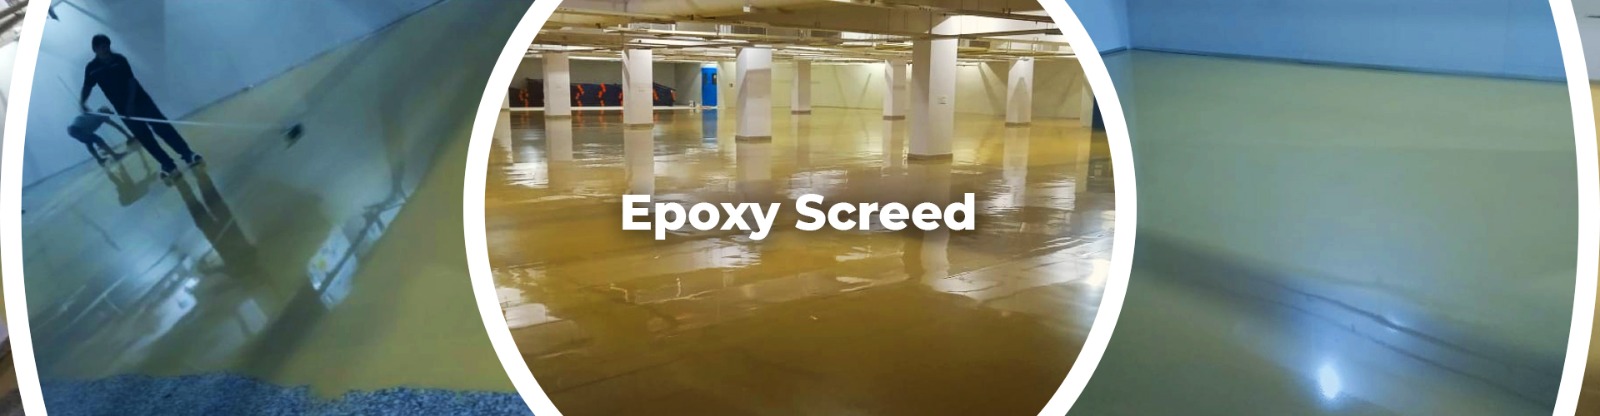 Epoxy Screed